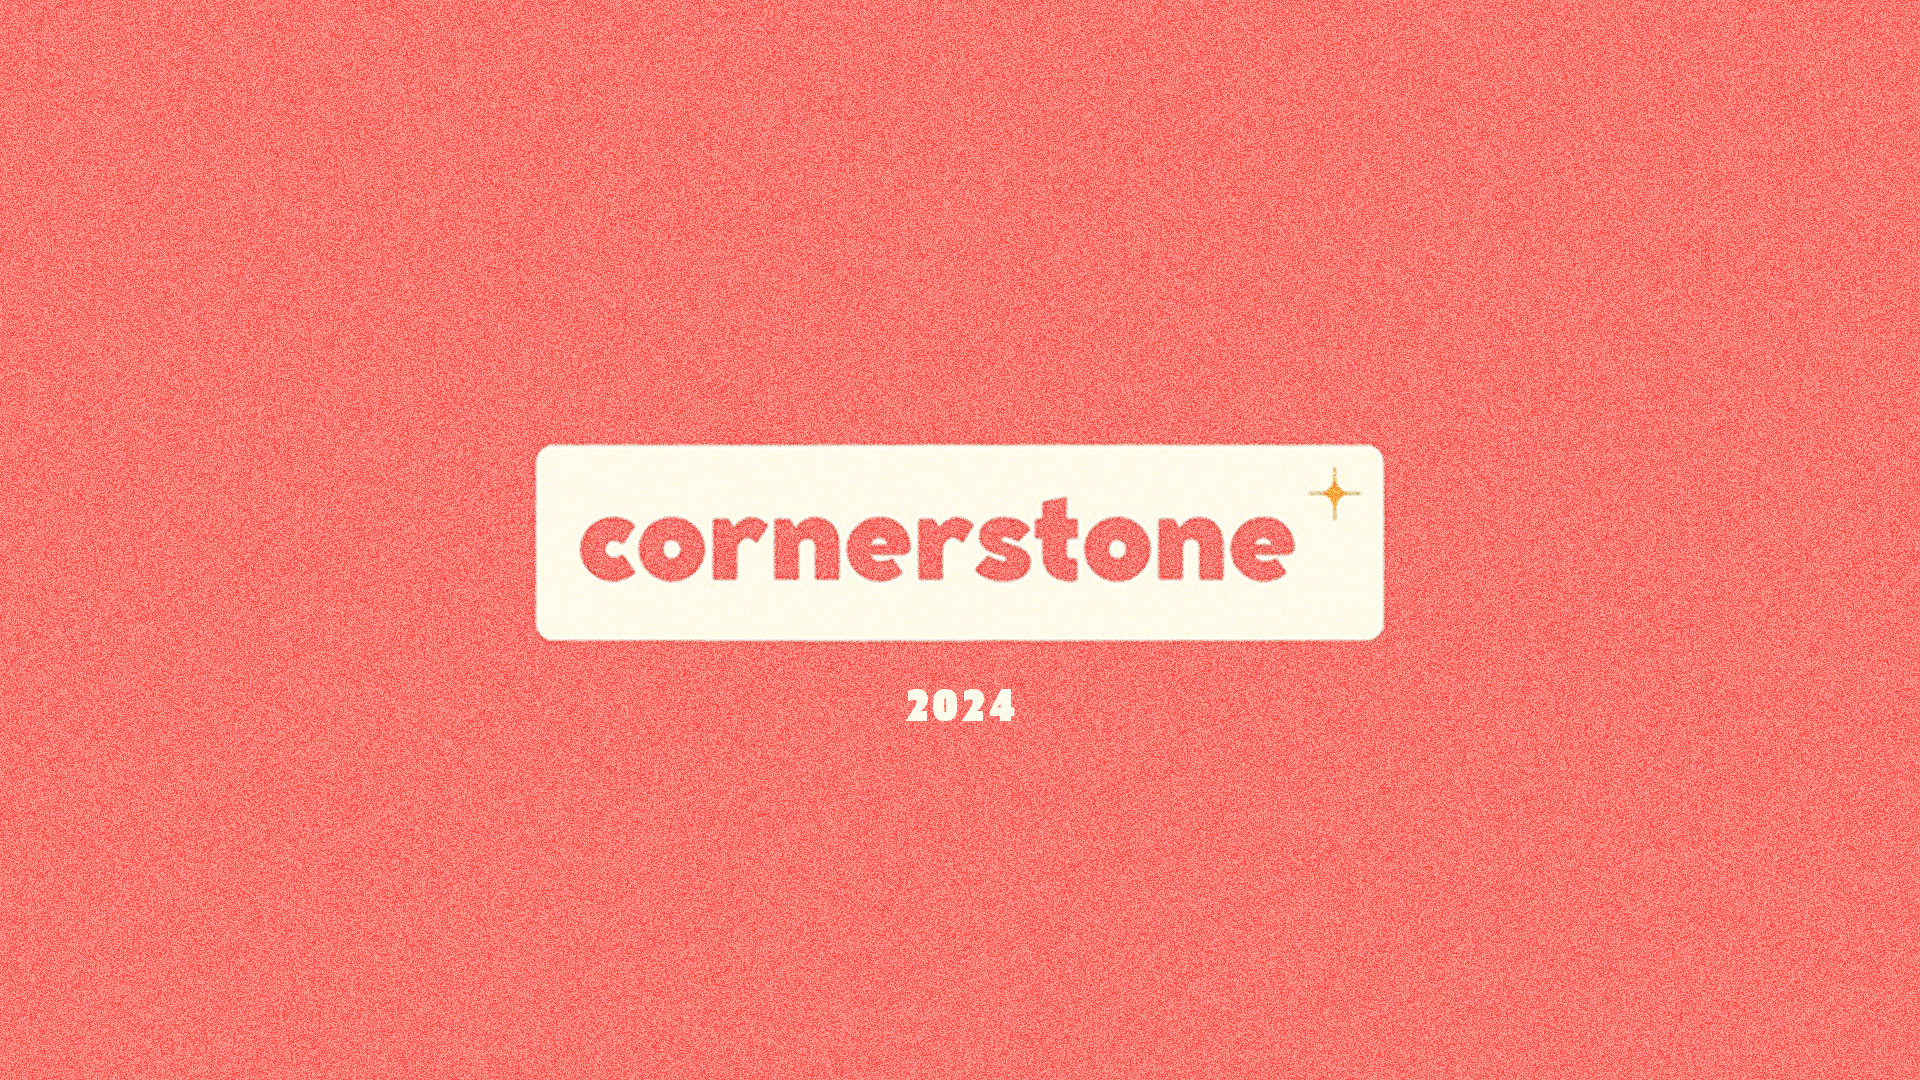 cornerstone image